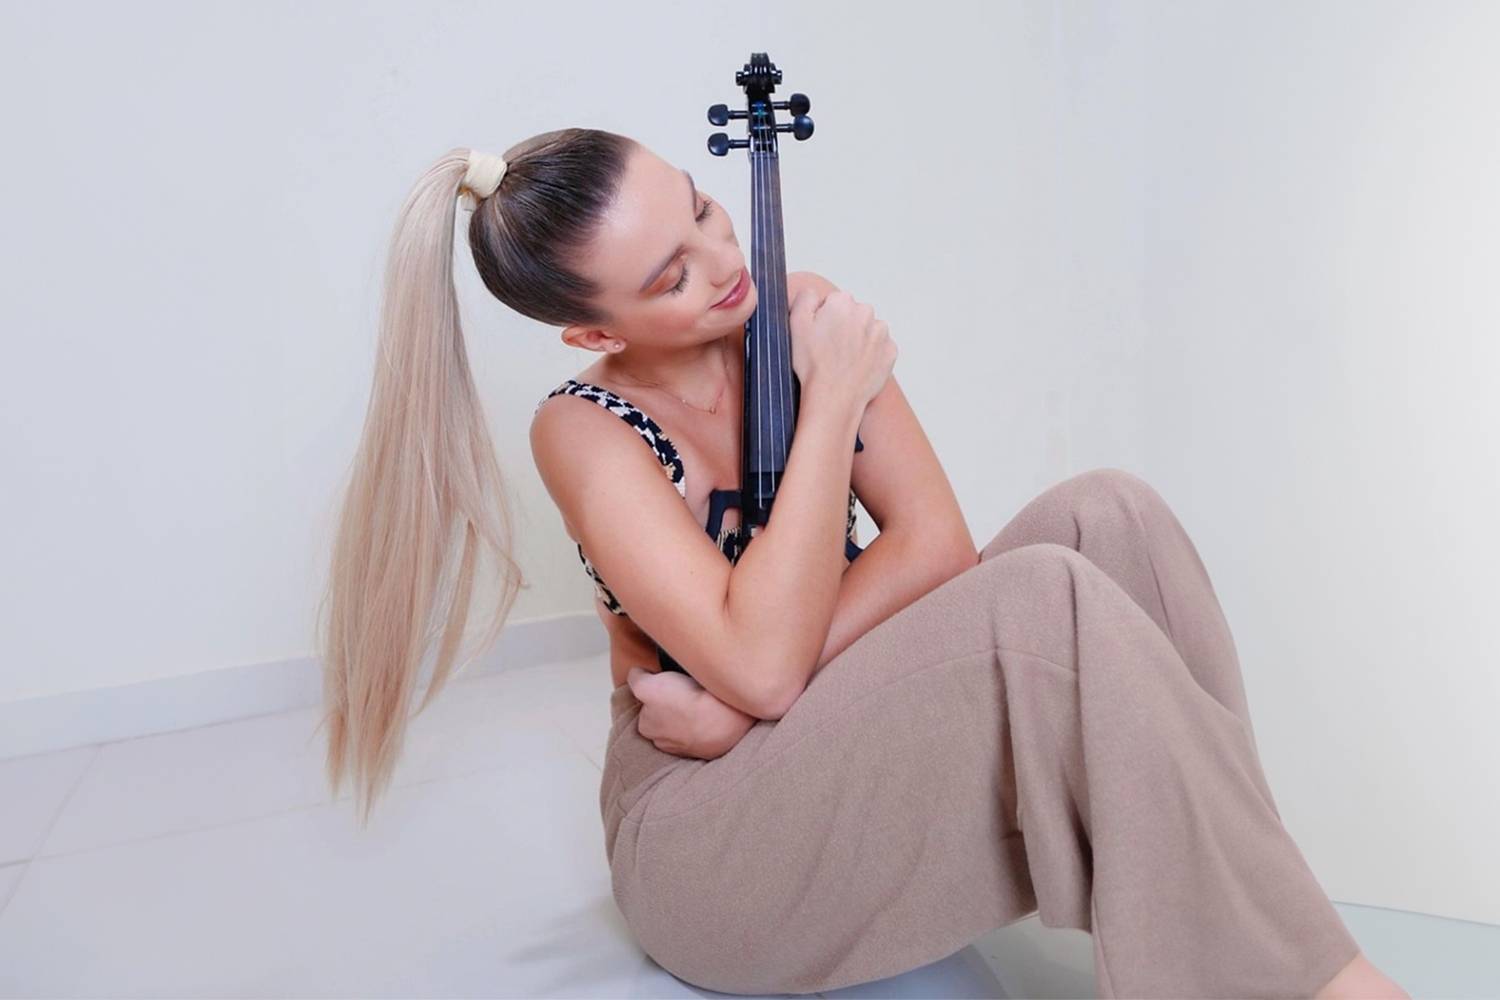 Female Solo Violinist